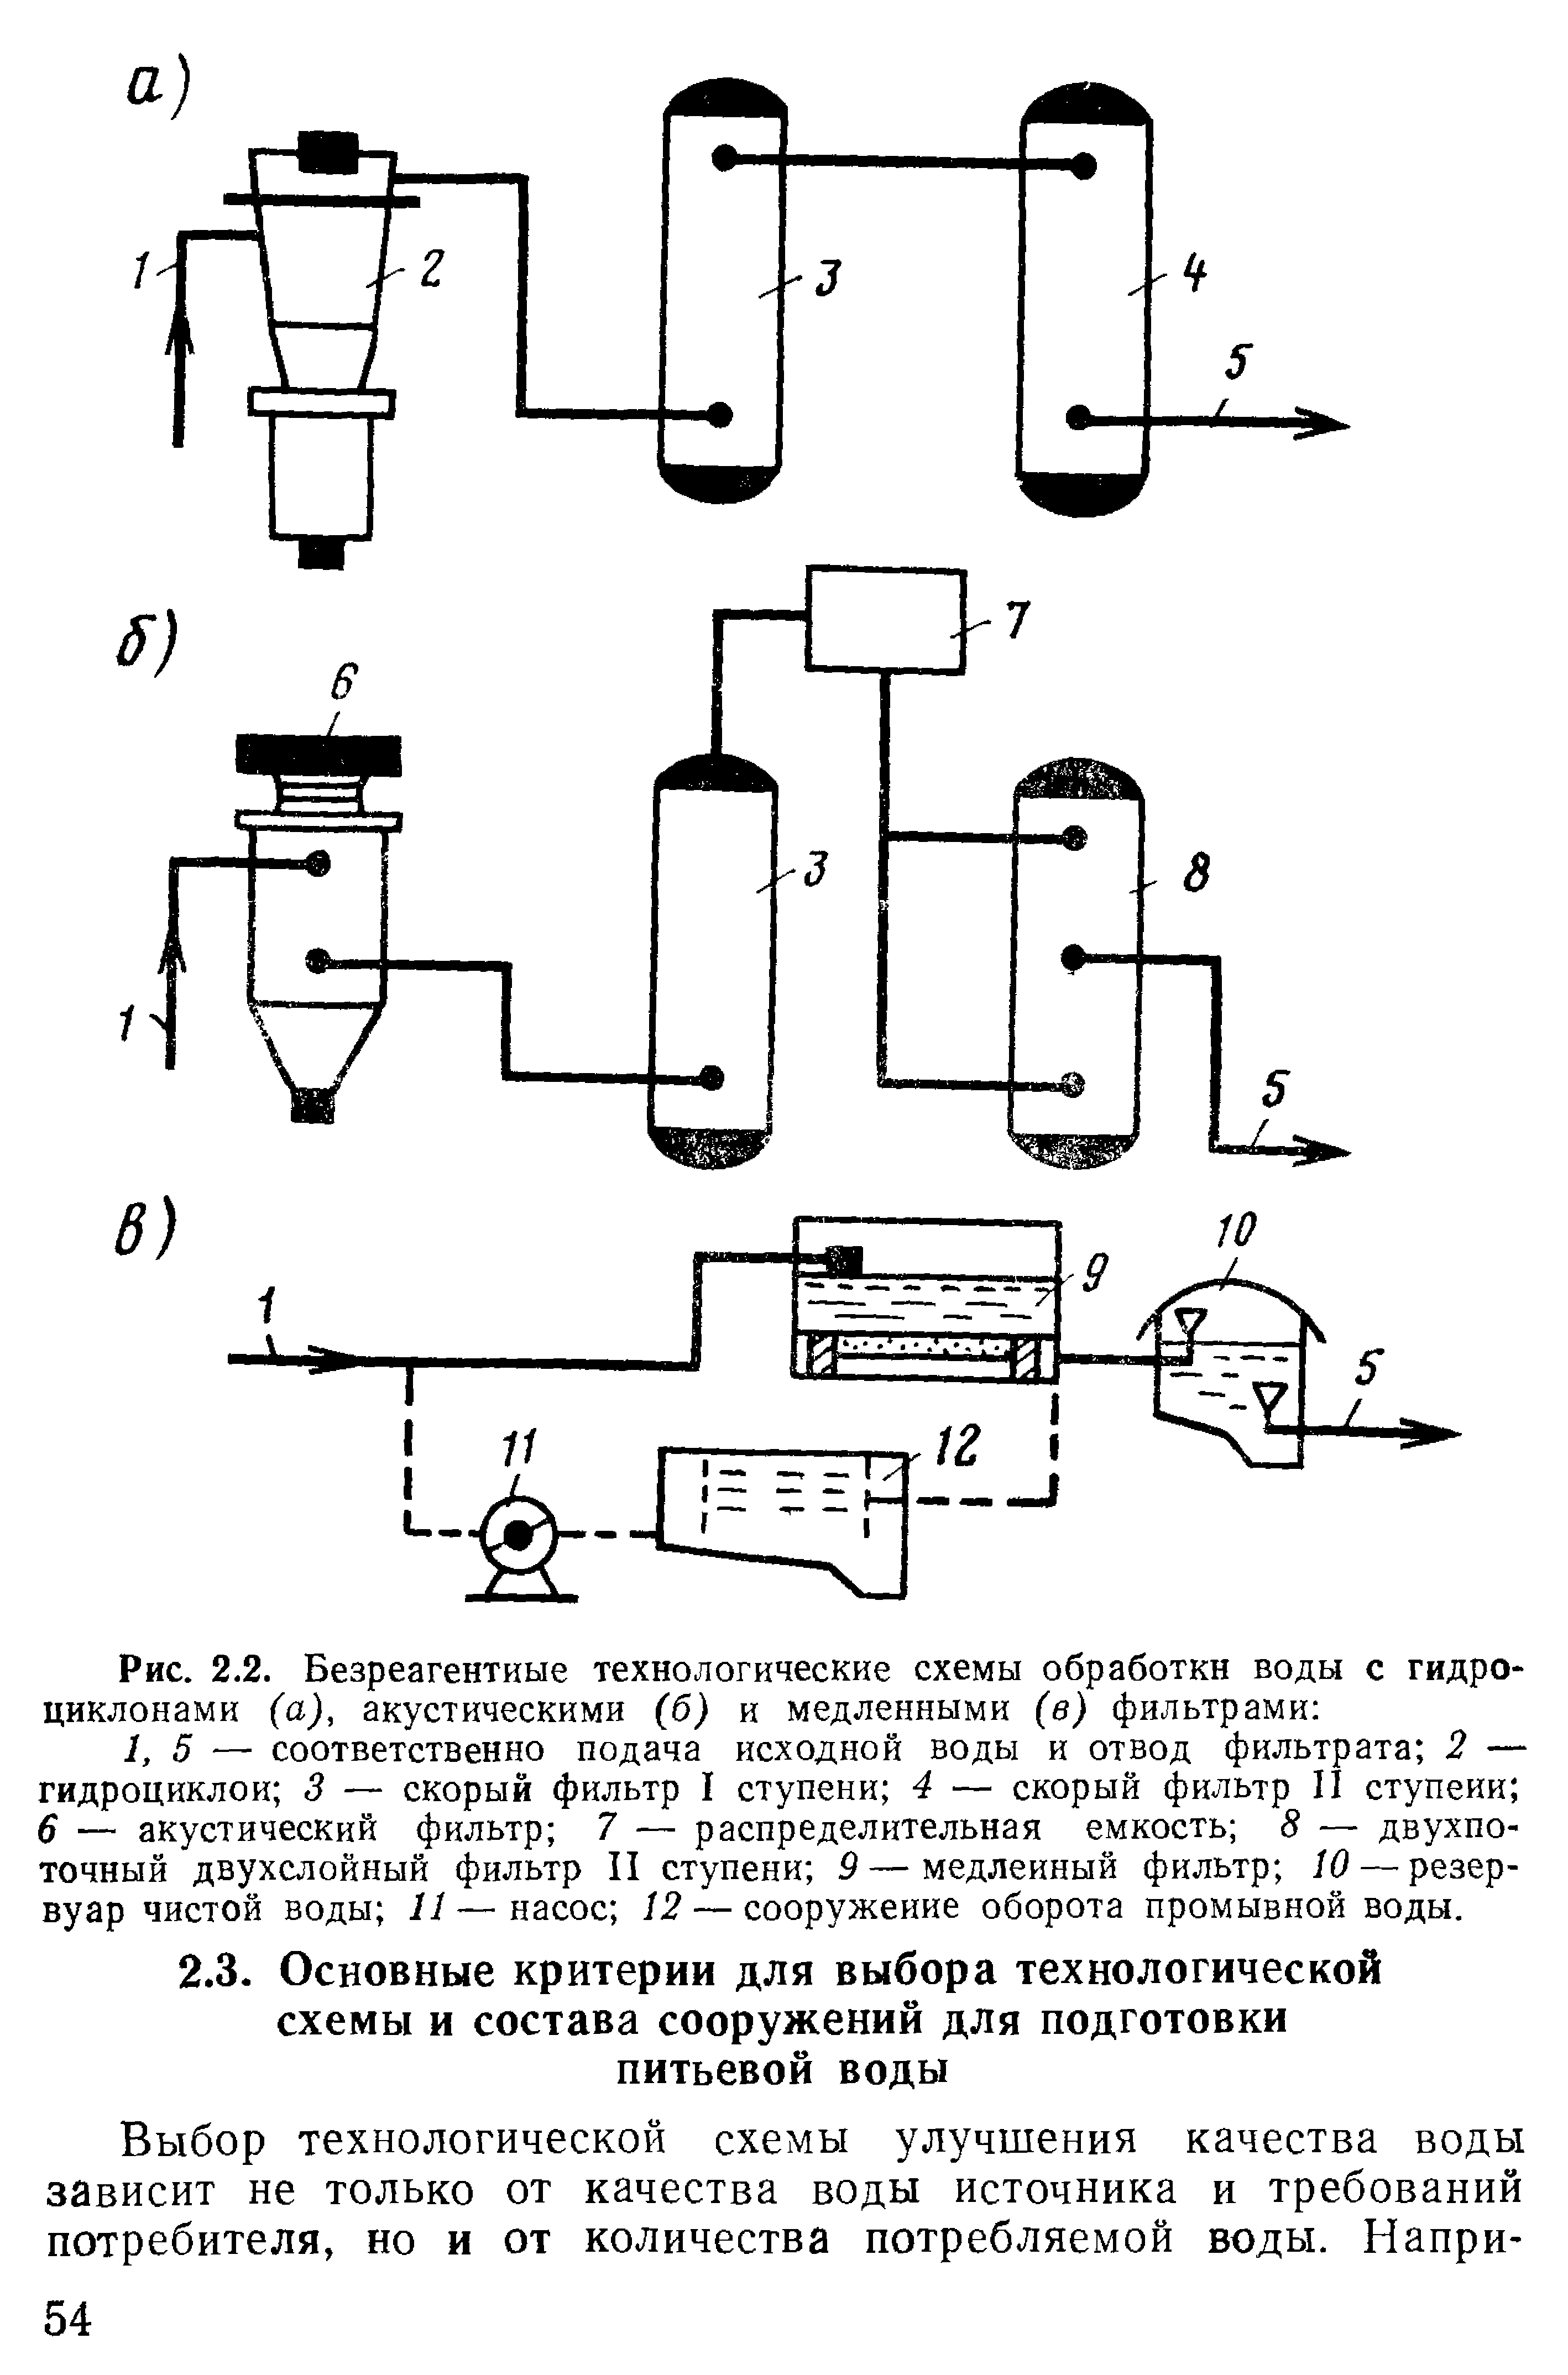 Рис. 2.2. Безреагентиые технологические схемы обработки воды с гидроциклонами (а), акустическими (б) и медленными (в) фильтрами 
